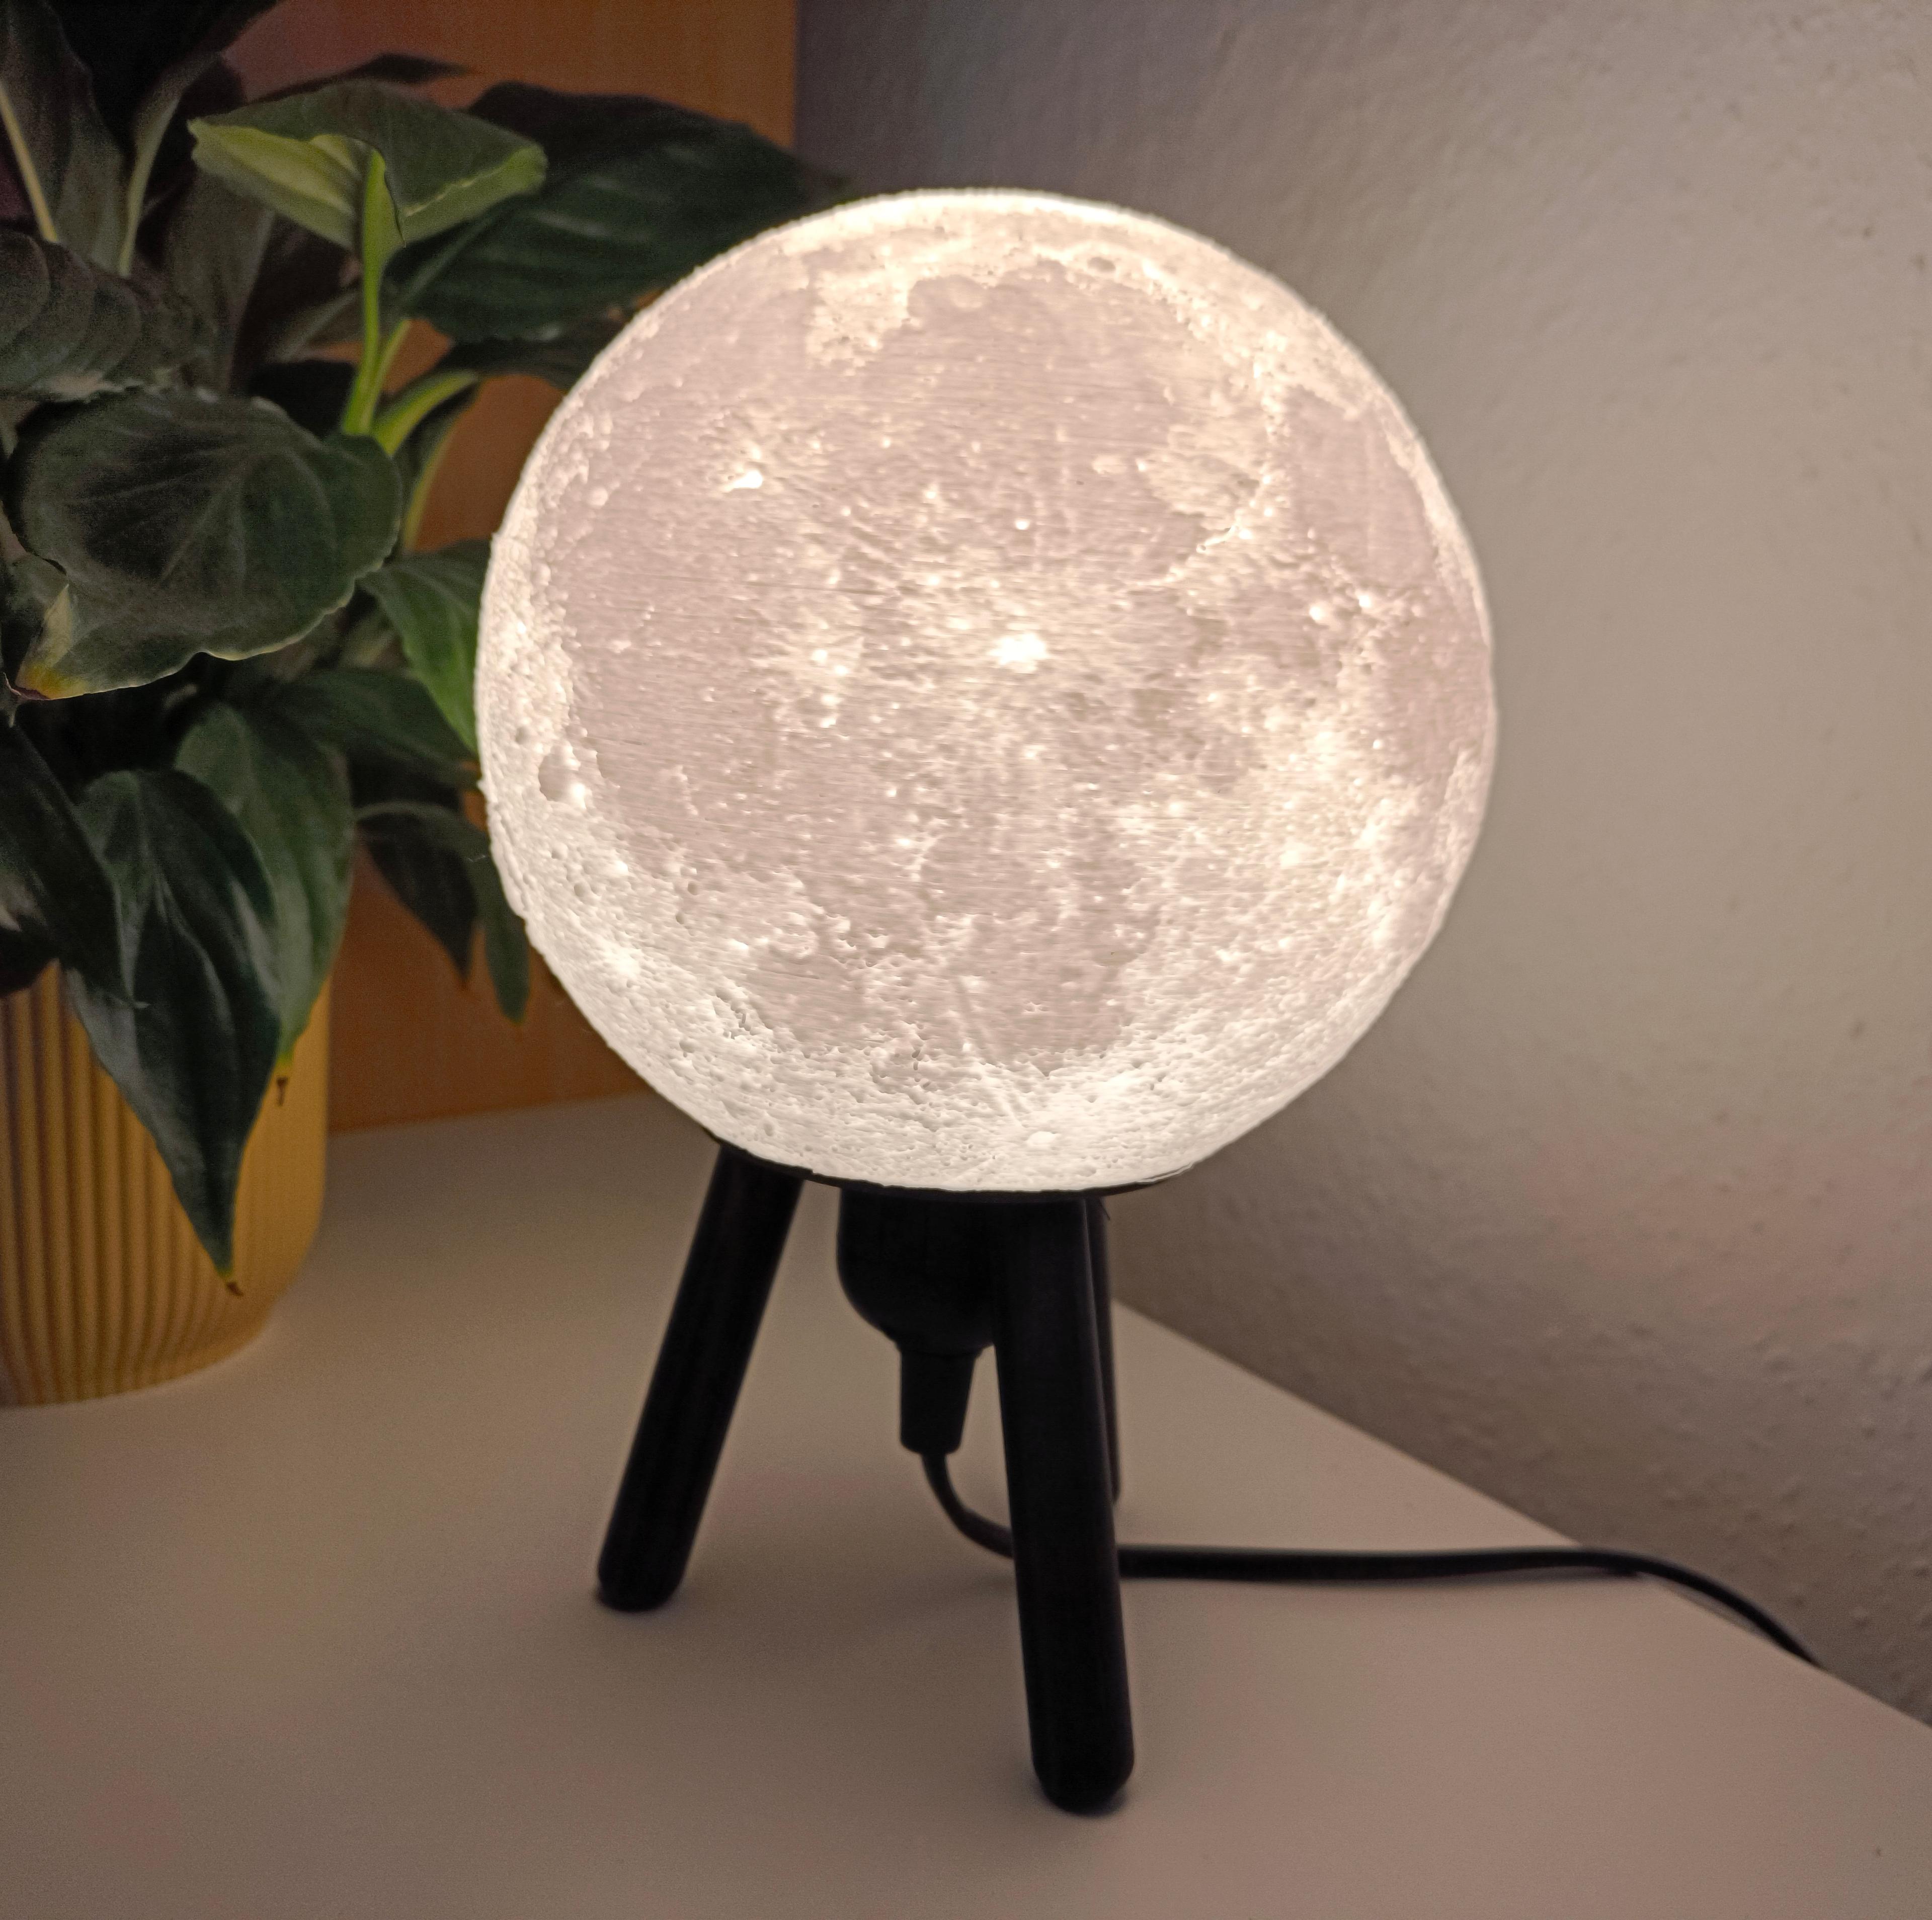 Hybrid Hanging/Desk Moon Lamp 3d model